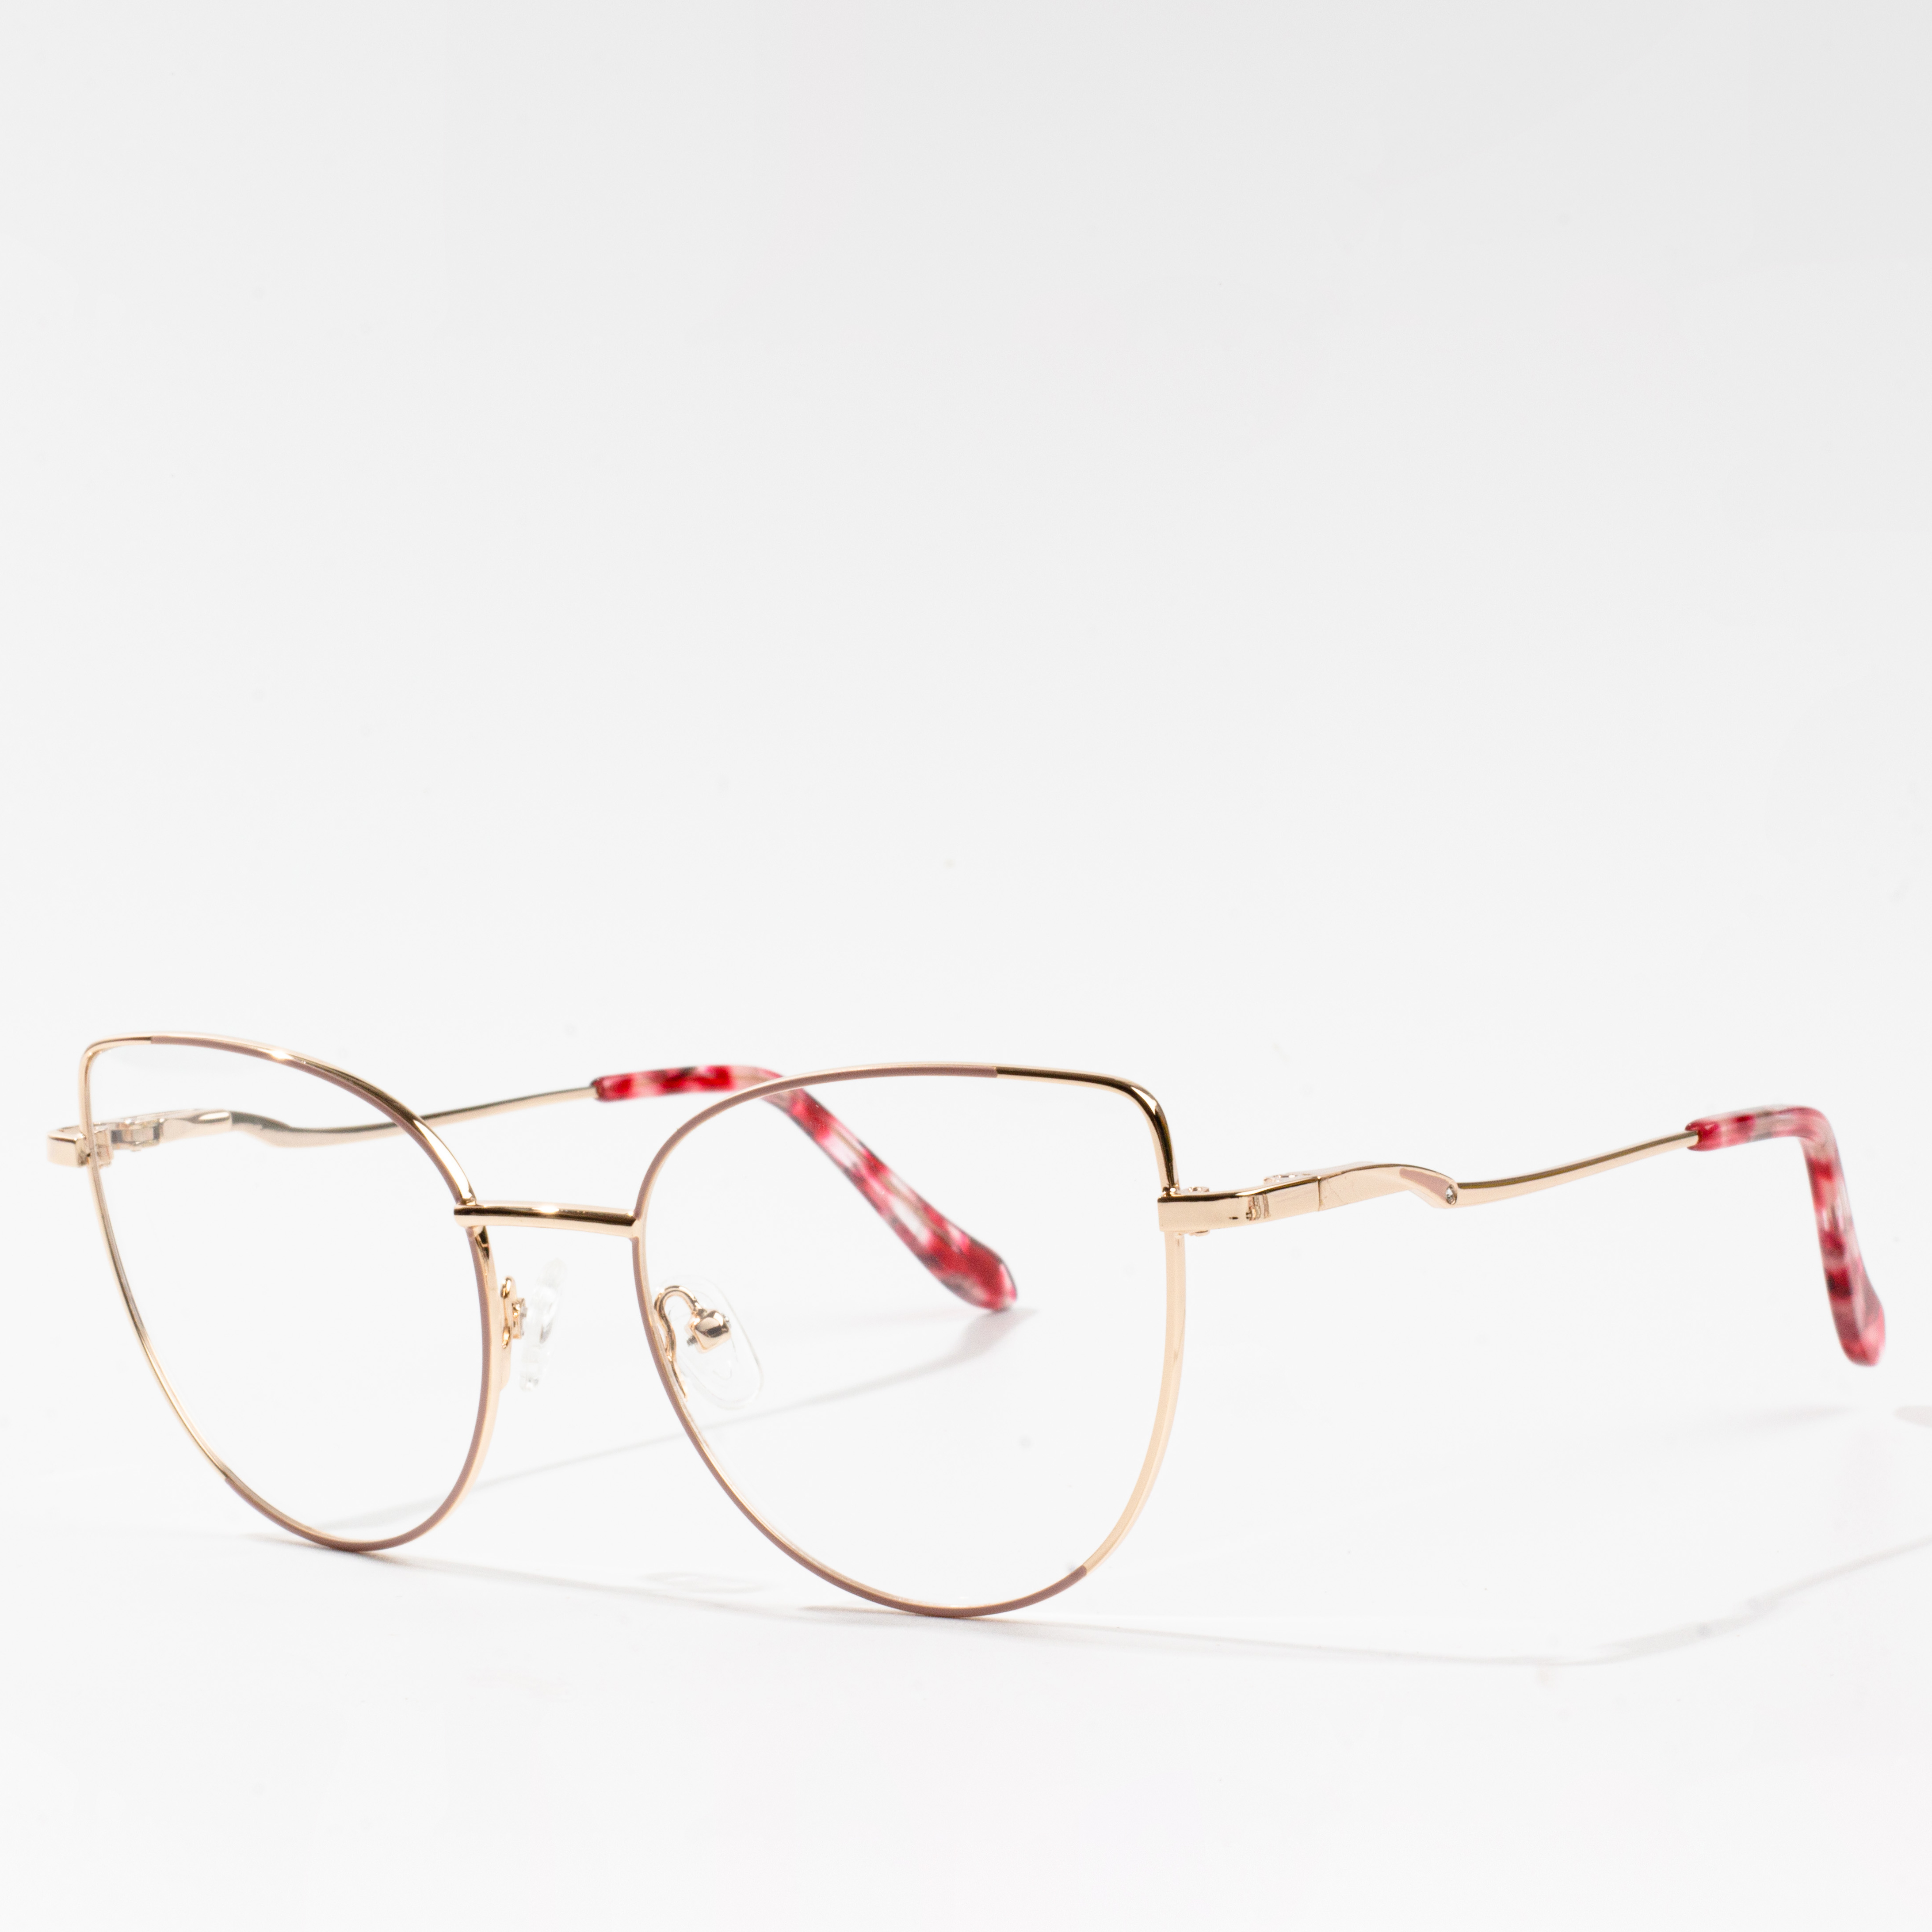 frame for eyeglasses